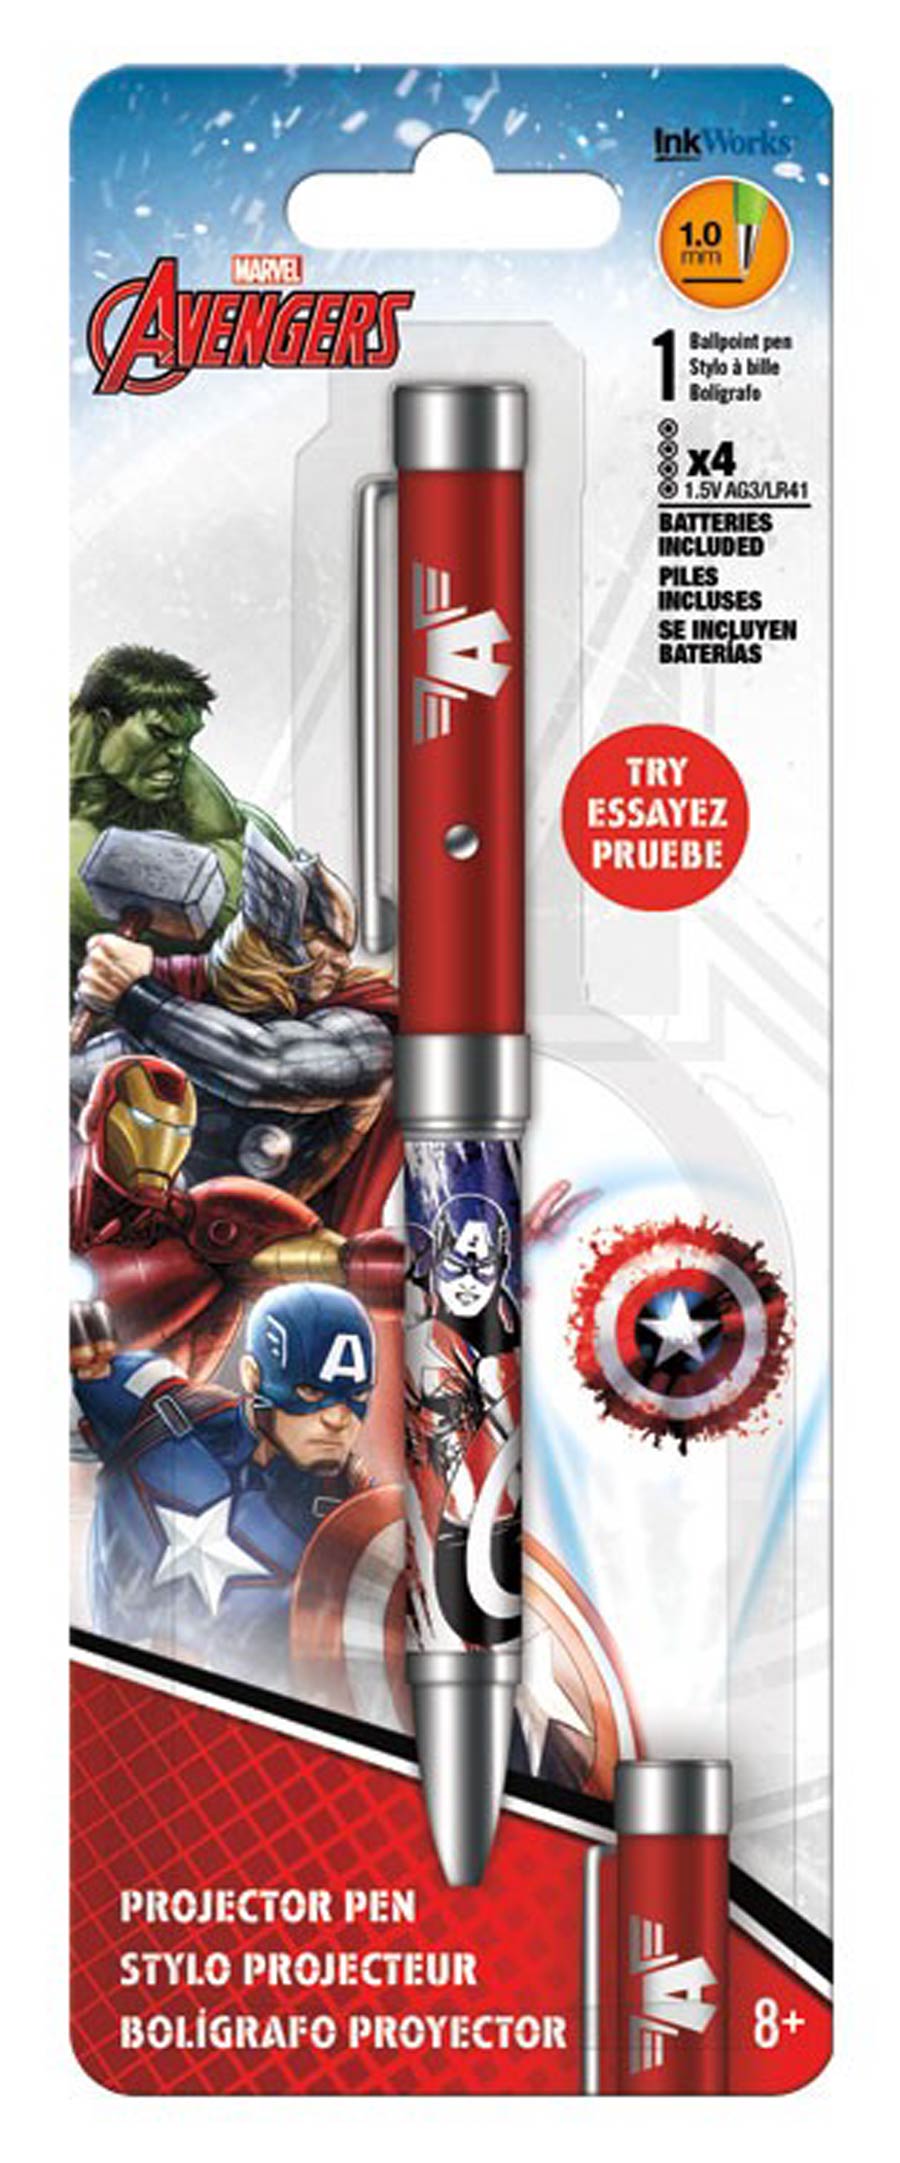 Avengers Assemble Captain America Projector Pen